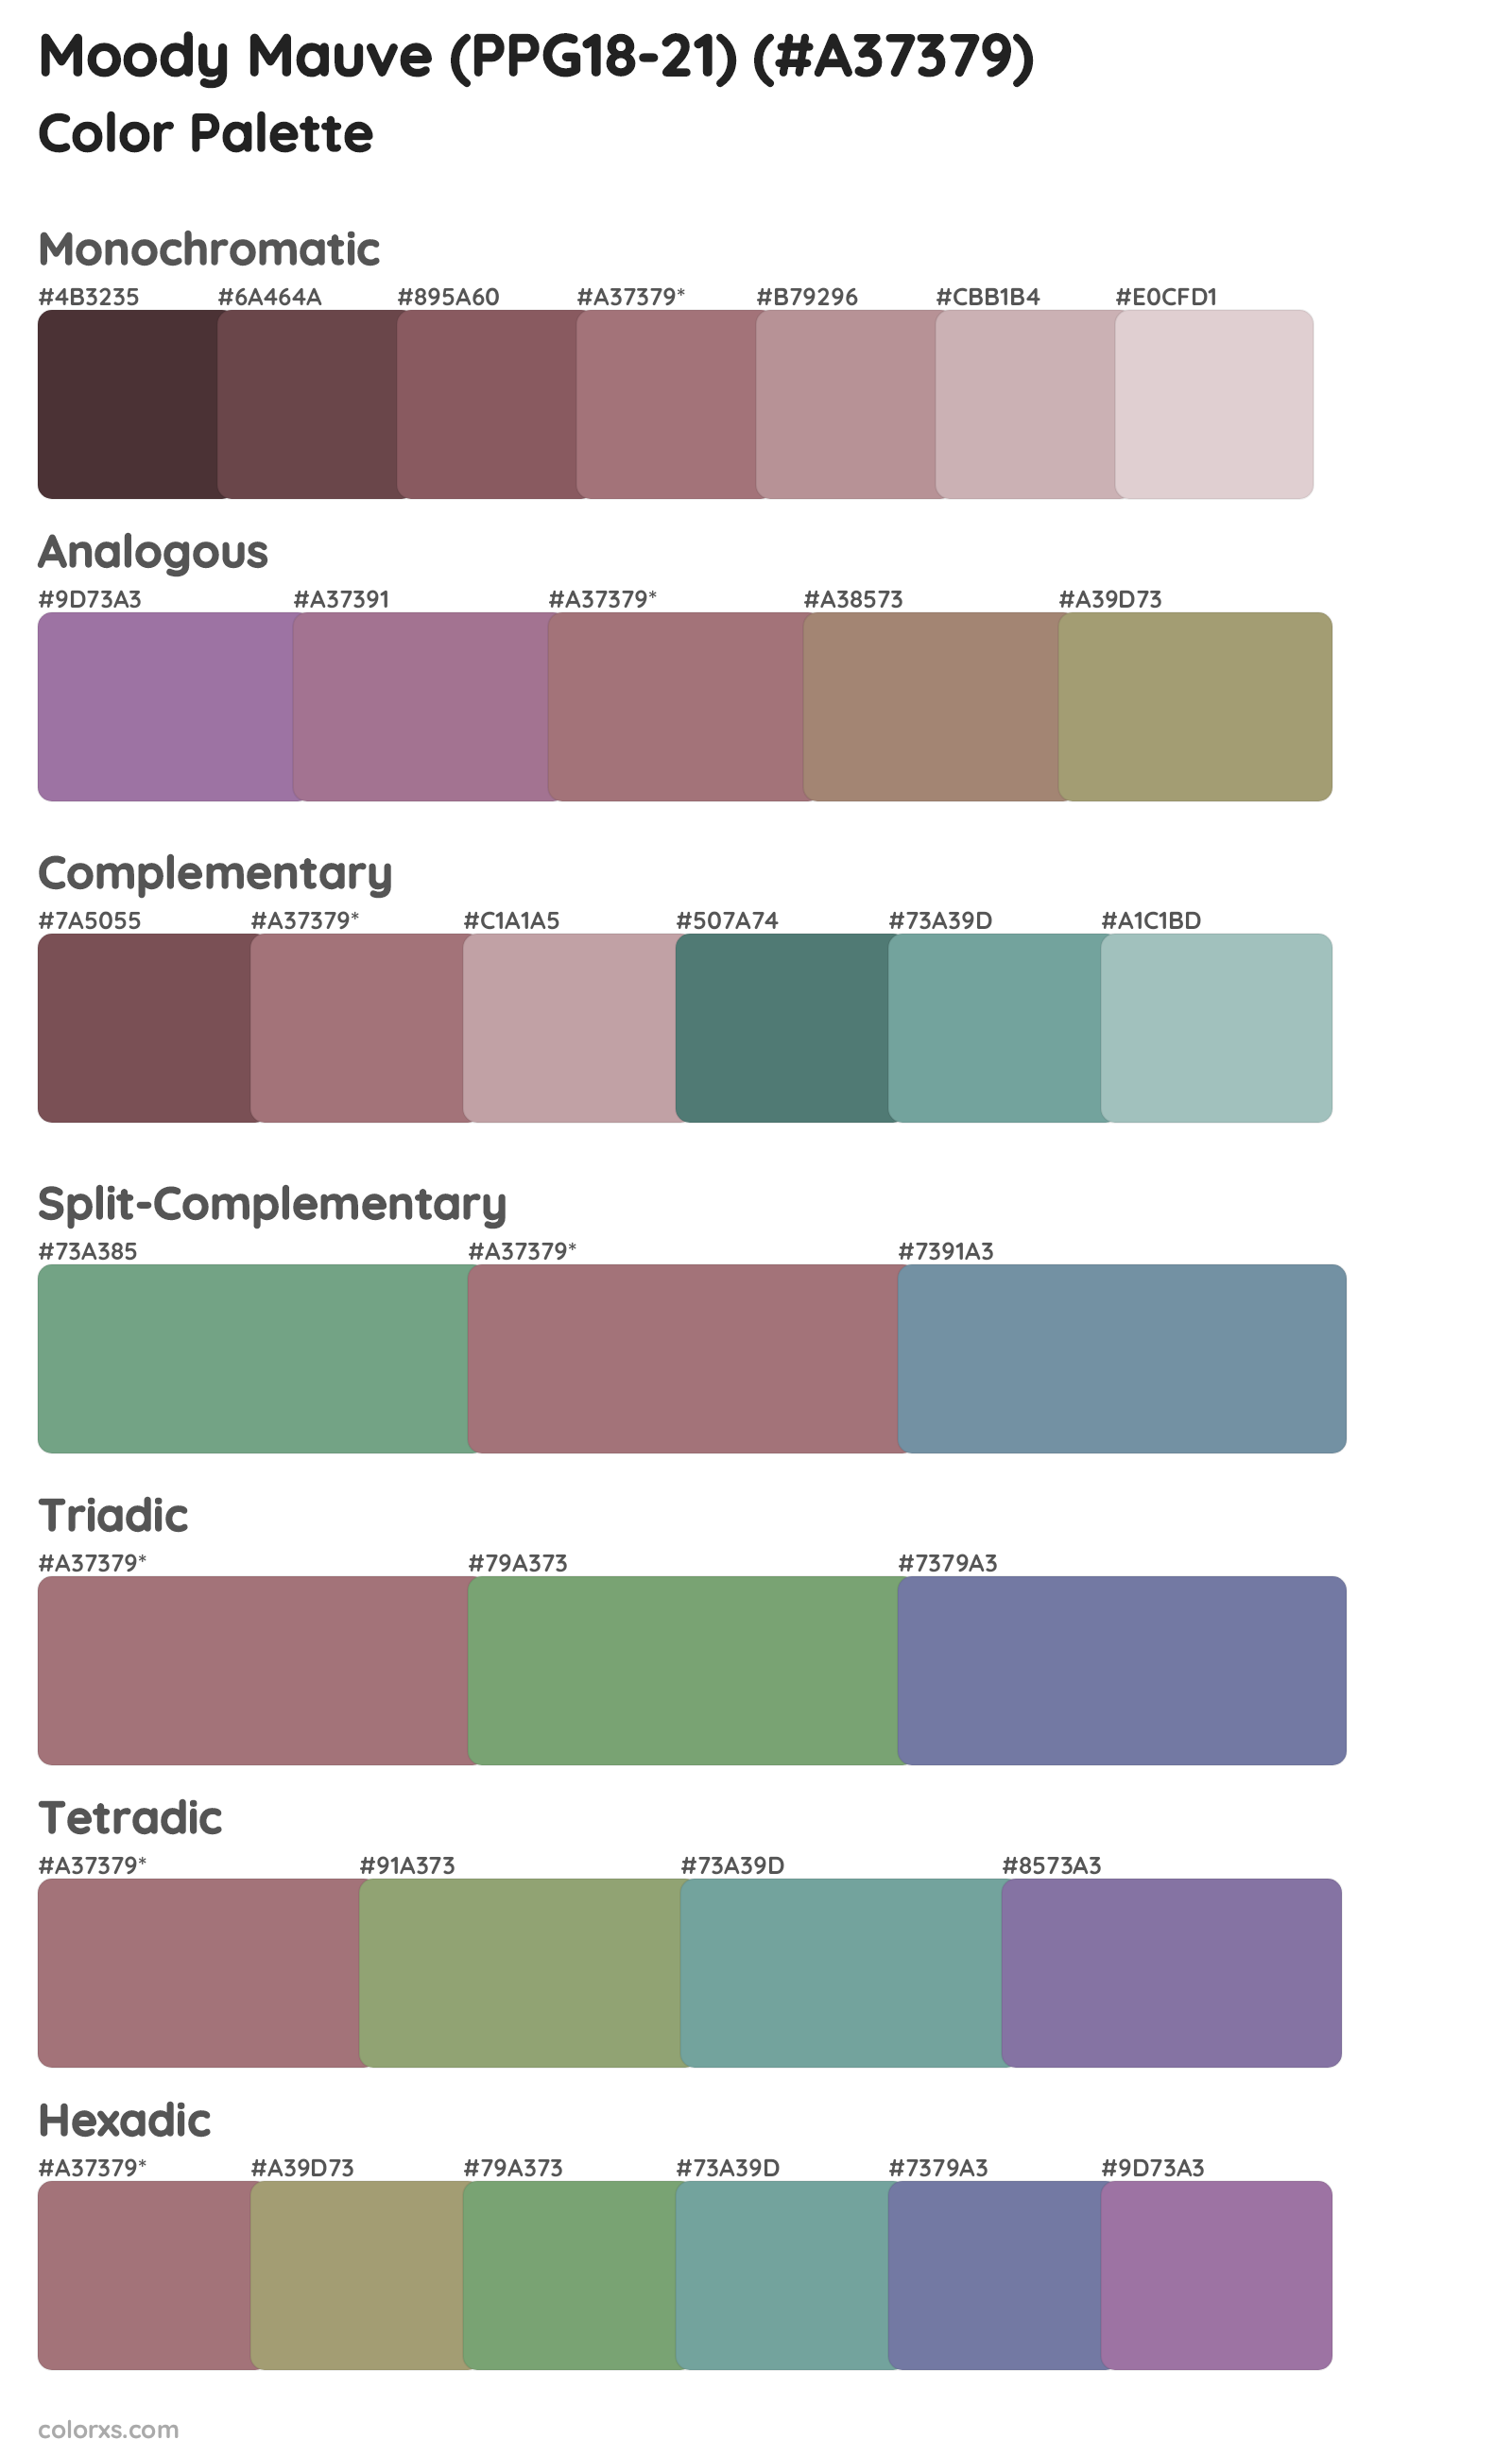 Moody Mauve (PPG18-21) Color Scheme Palettes